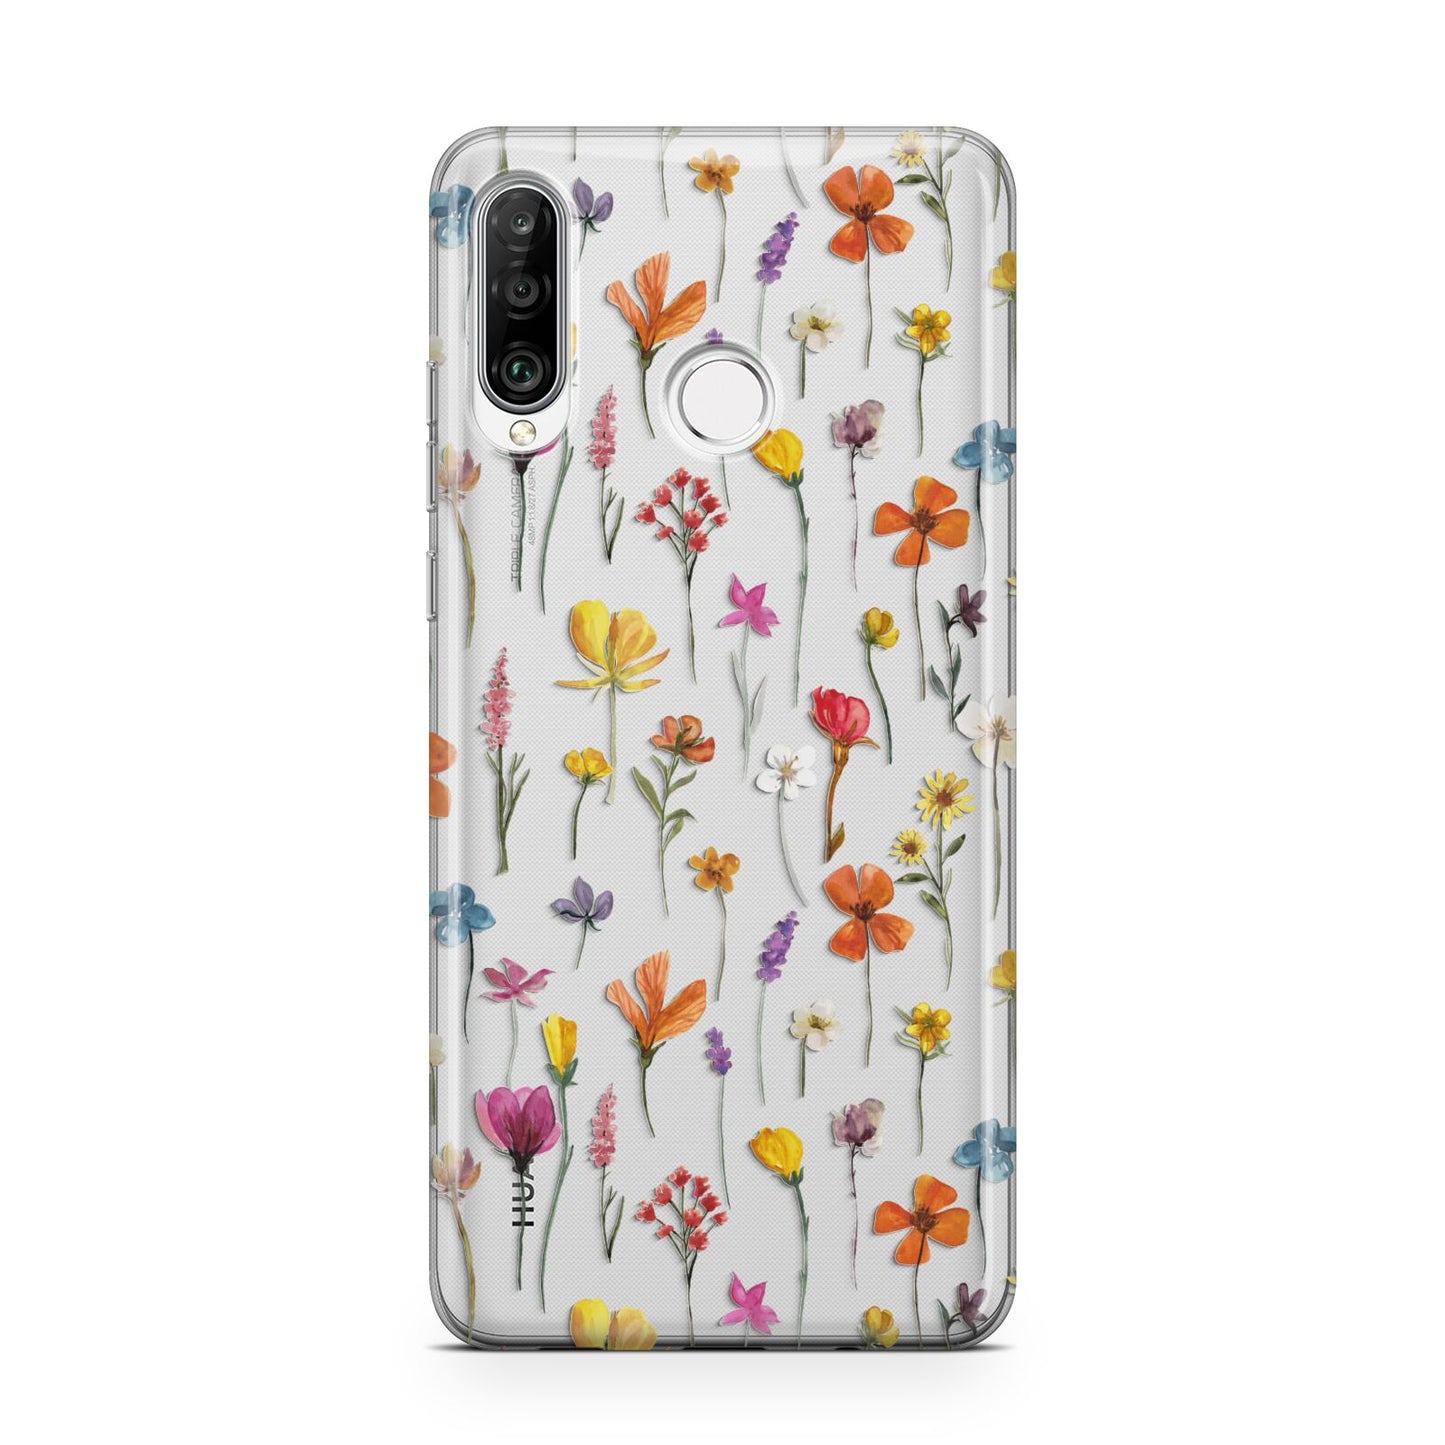 Botanical Floral Huawei P30 Lite Phone Case